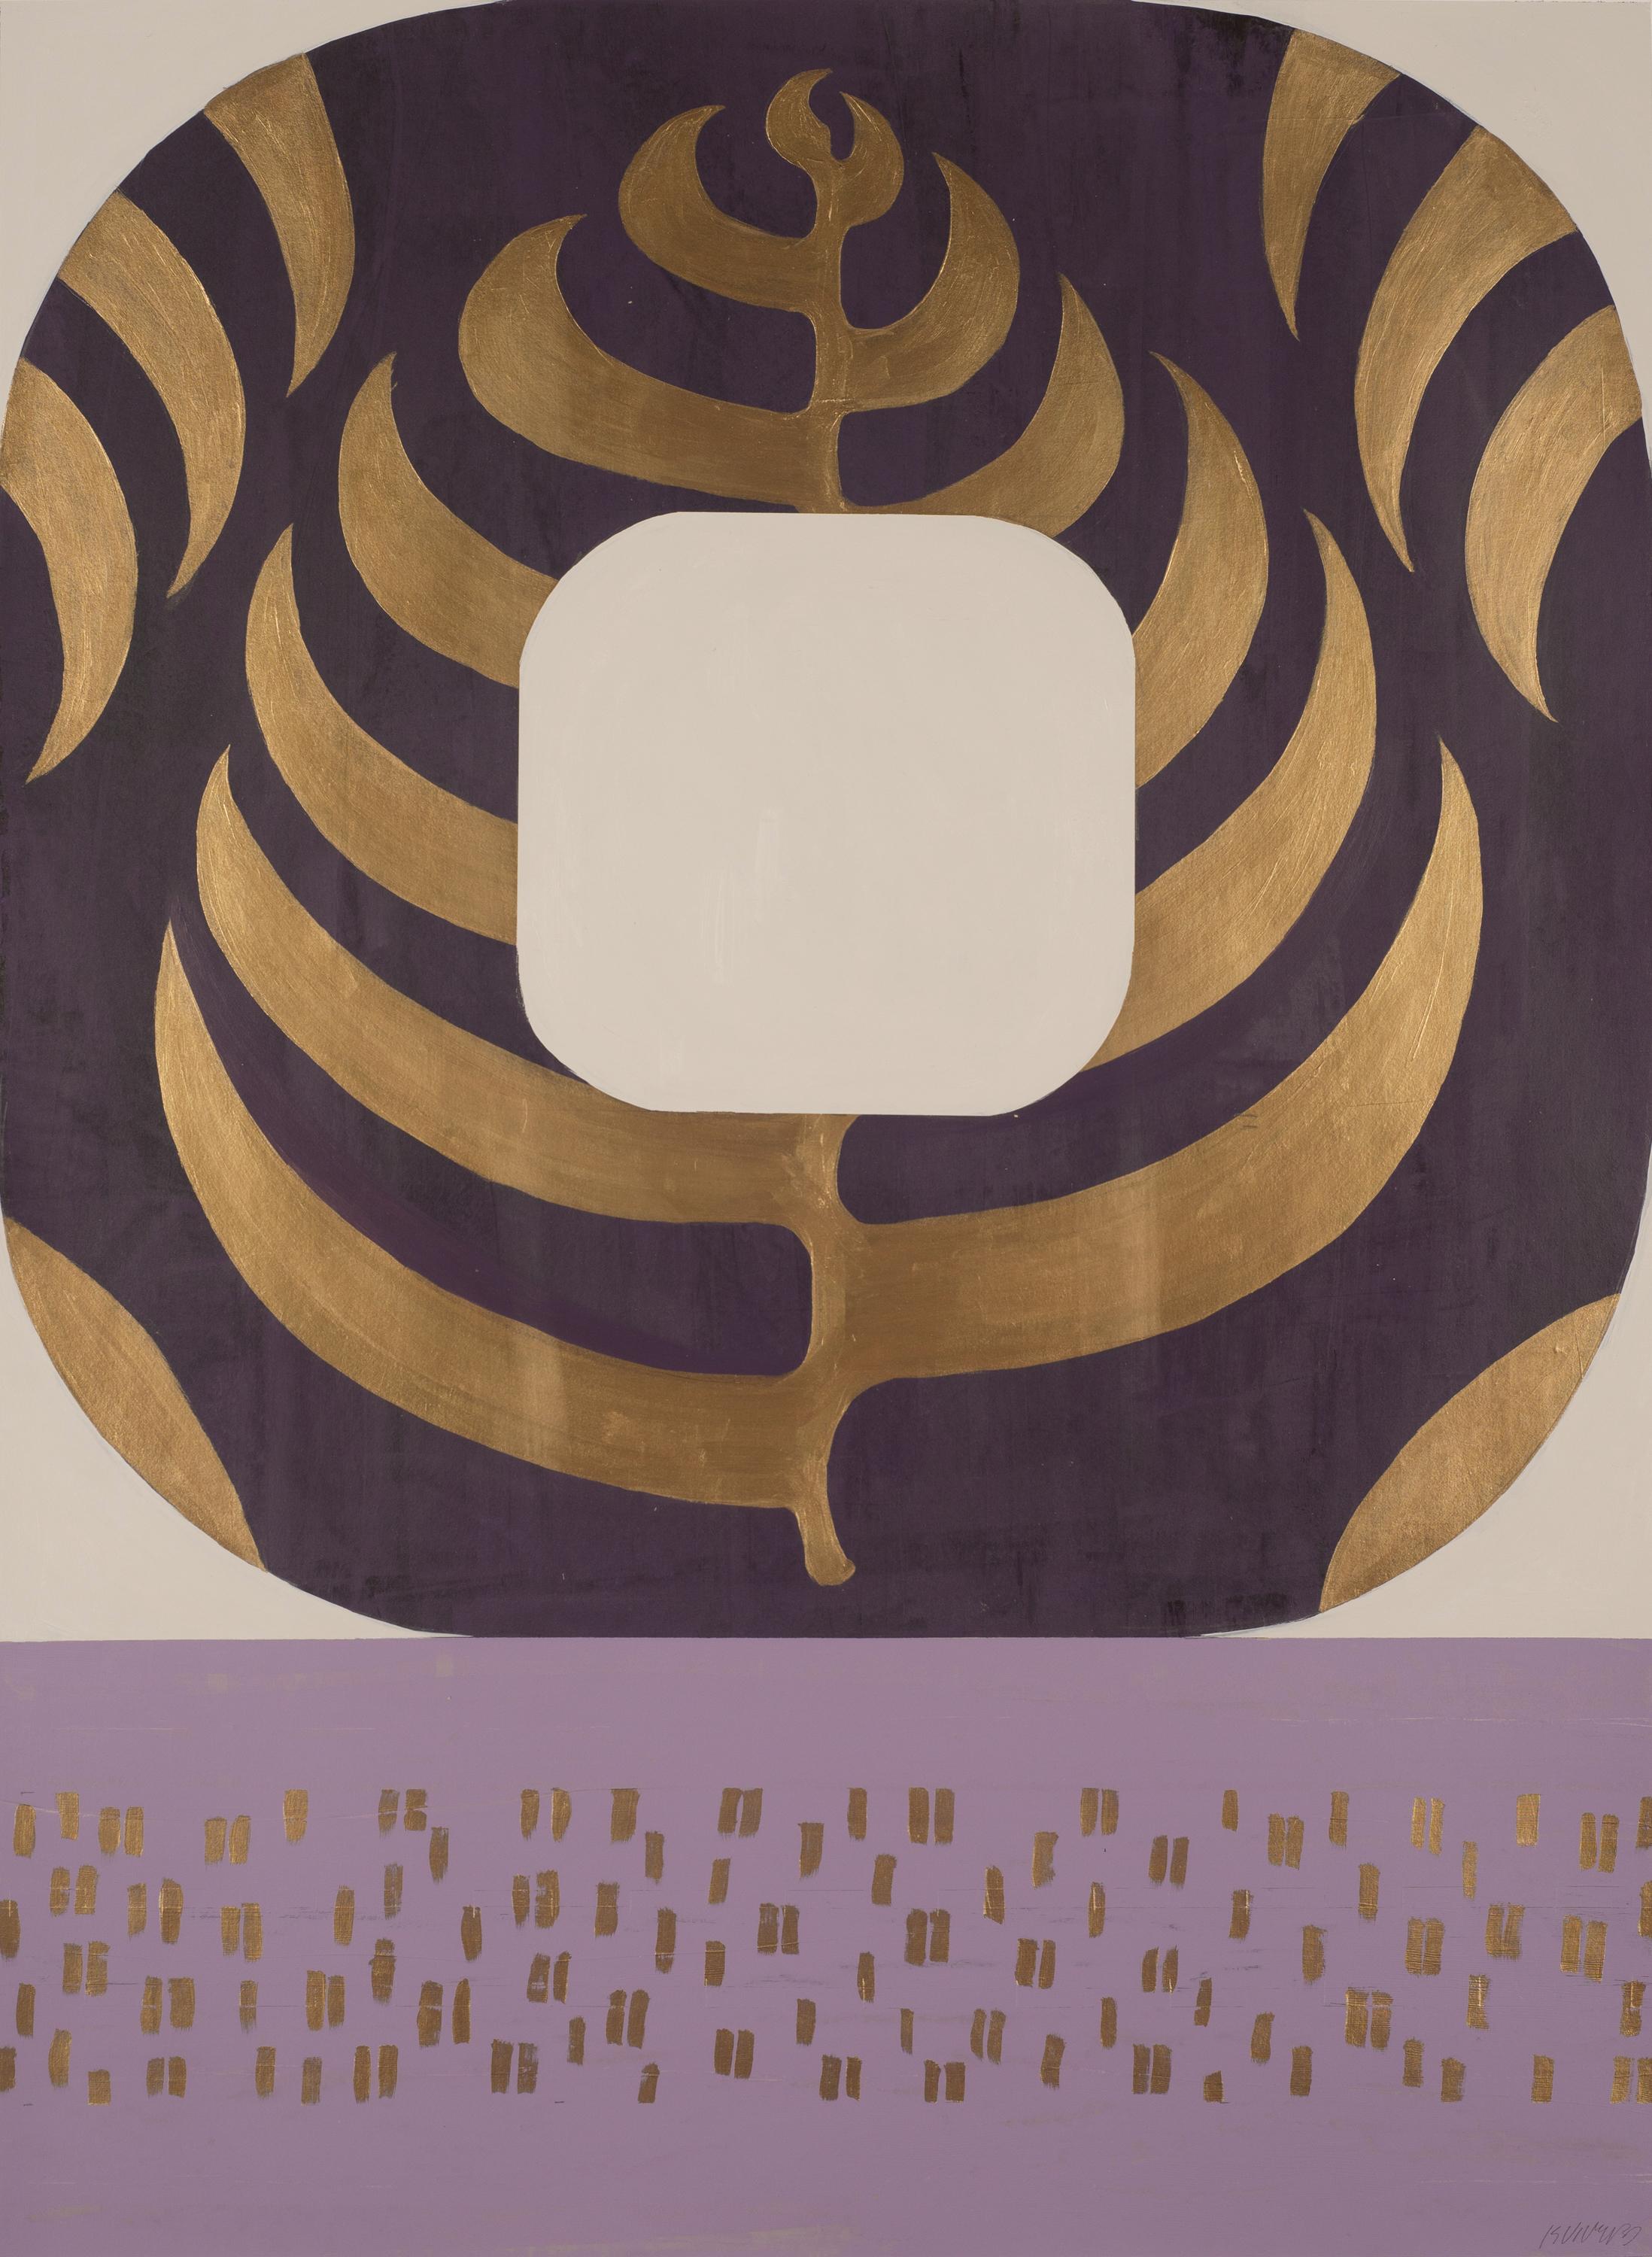 Peinture géométrique abstraite sur papier alternant aubergine, violet et or